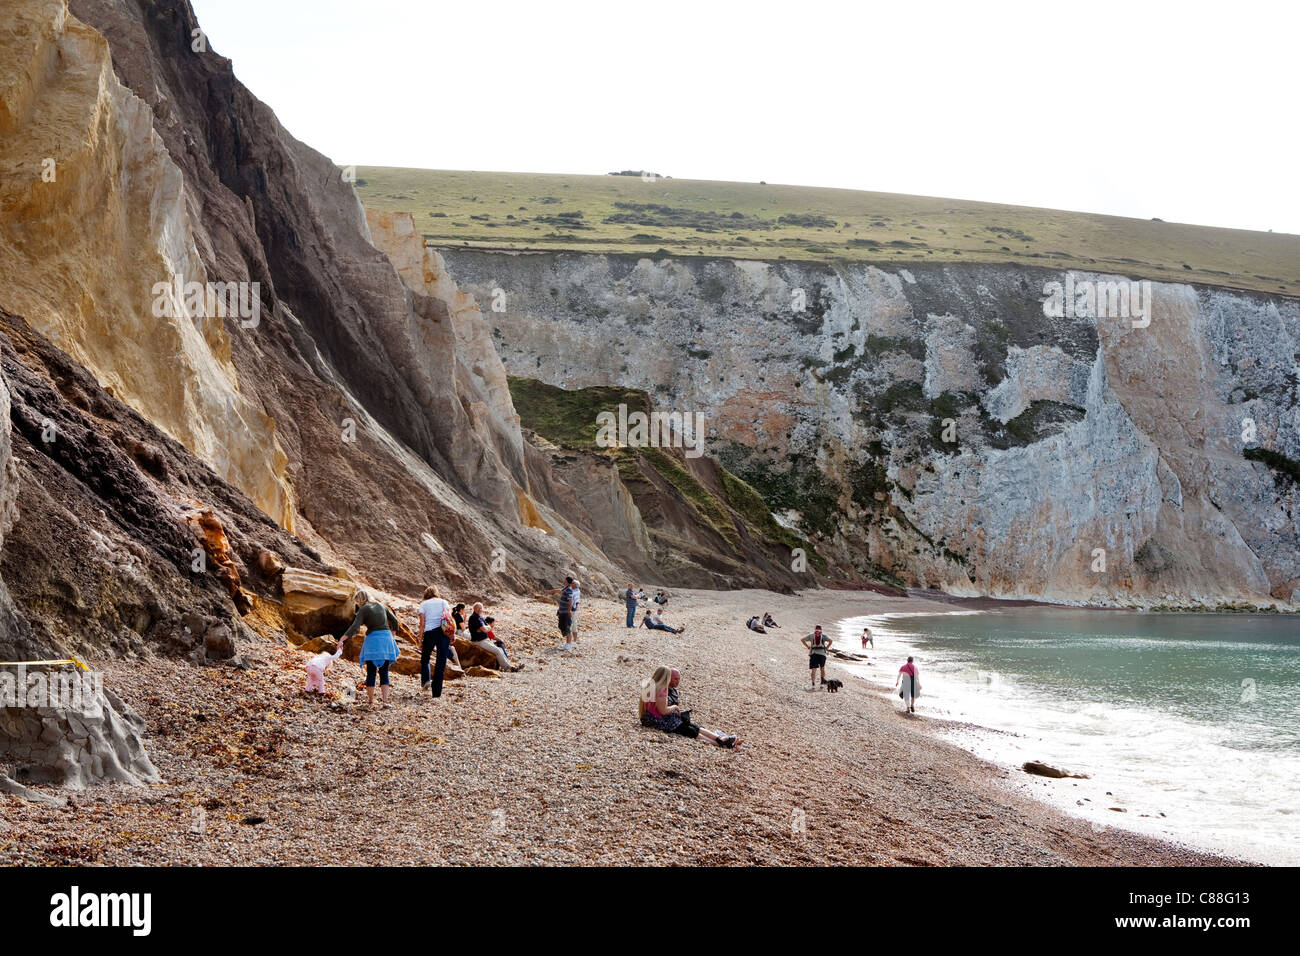 Alum Bay, en la Isla de Wight. De interés geológico y una atracción turística, la bahía se destaca por sus acantilados de arena multicolor. Foto de stock